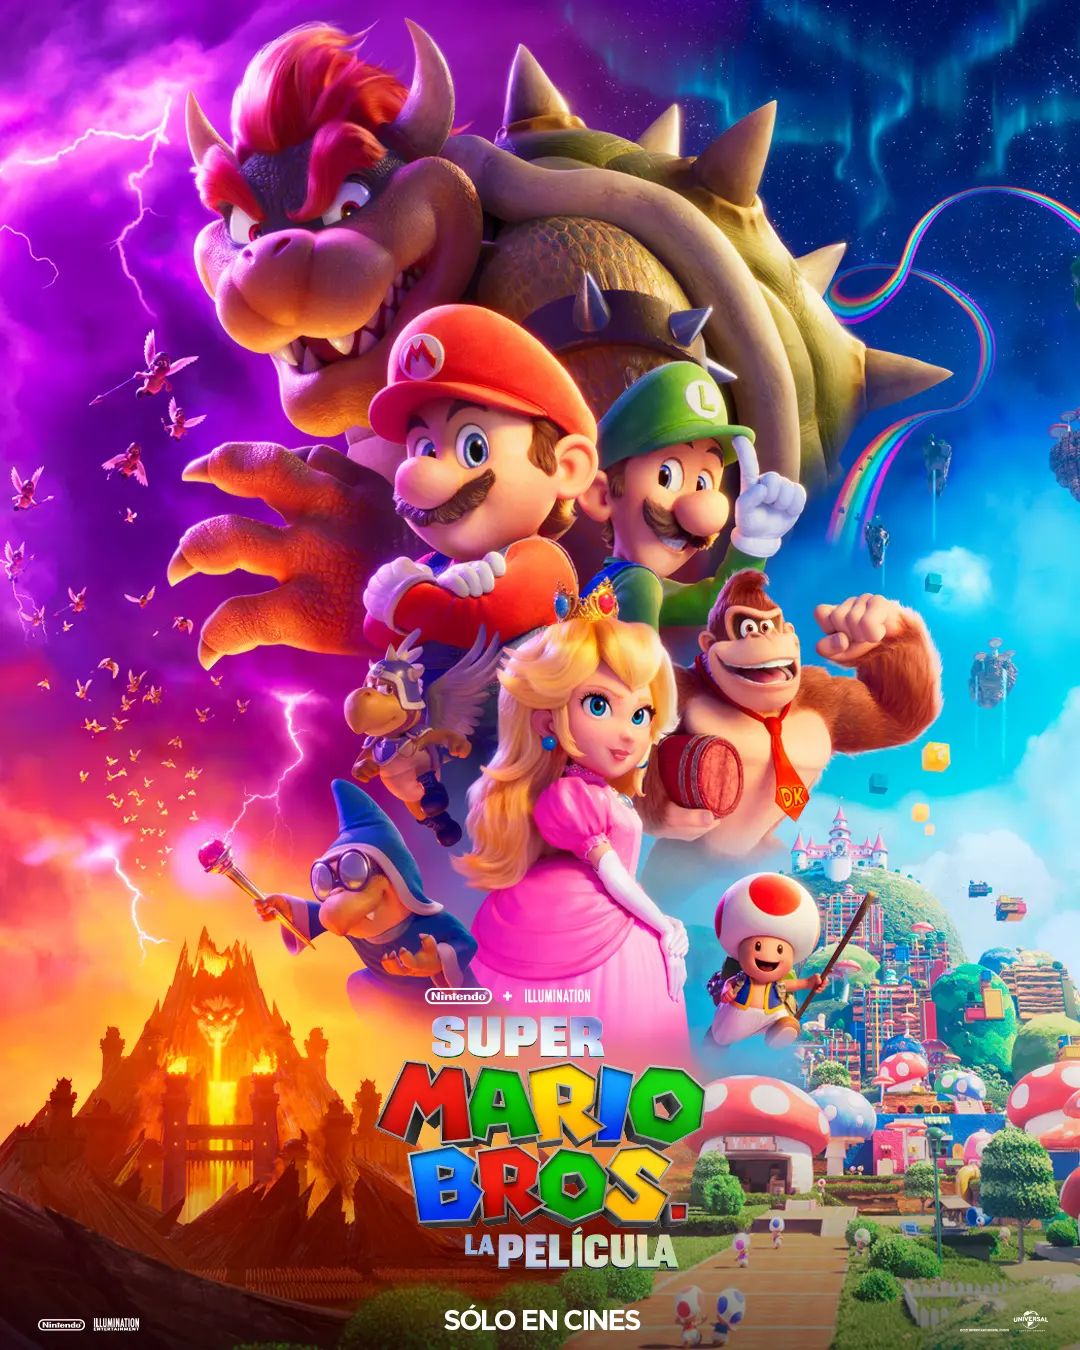 Super Mario Bros: La Pelcula